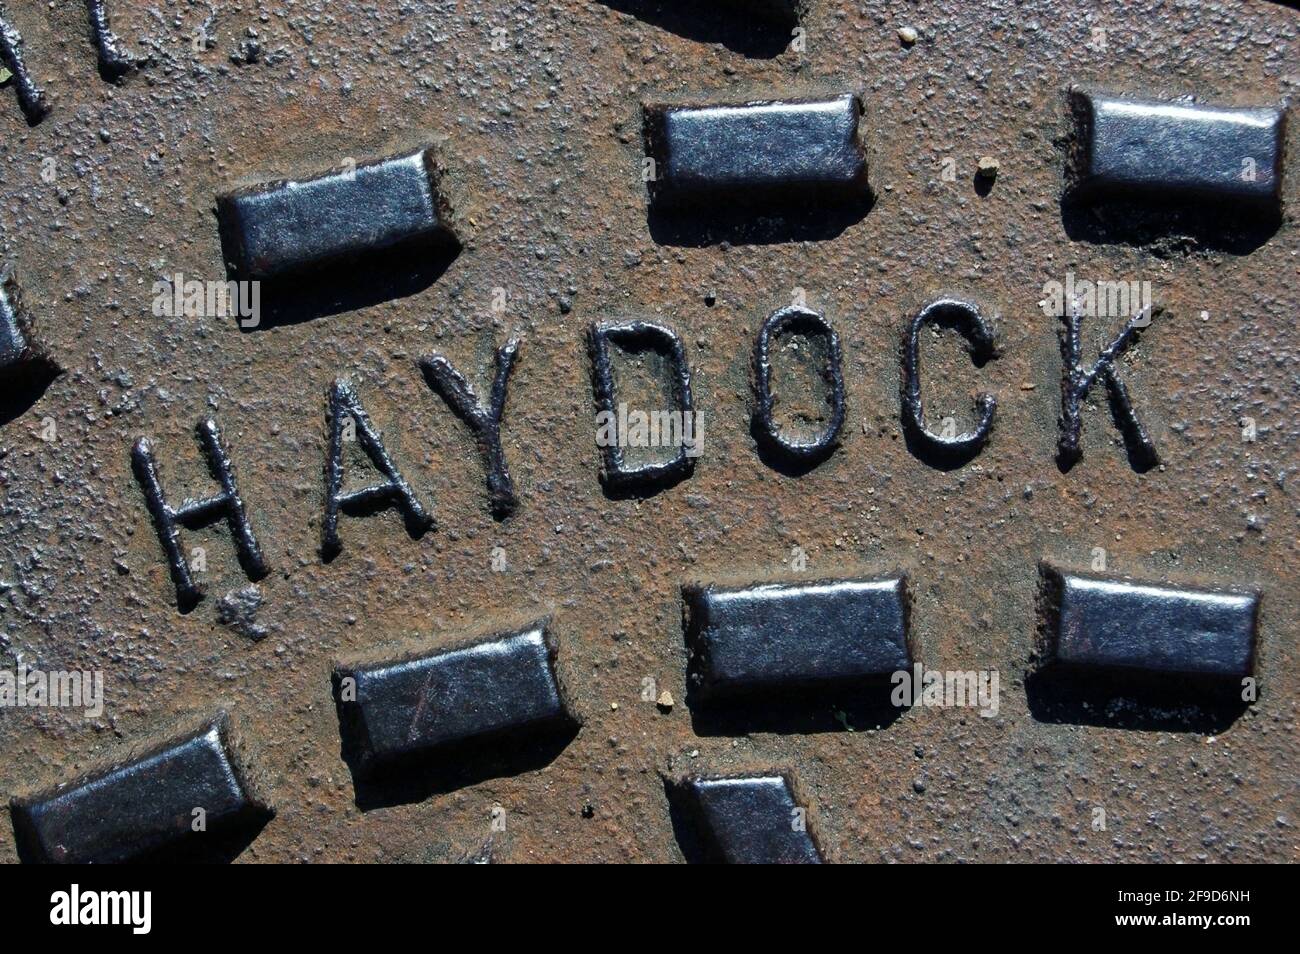 Un trou d'homme en fonte couvrant un drain marqué de la ville de Haydock, à Merseyside, vue par une journée ensoleillée. Banque D'Images